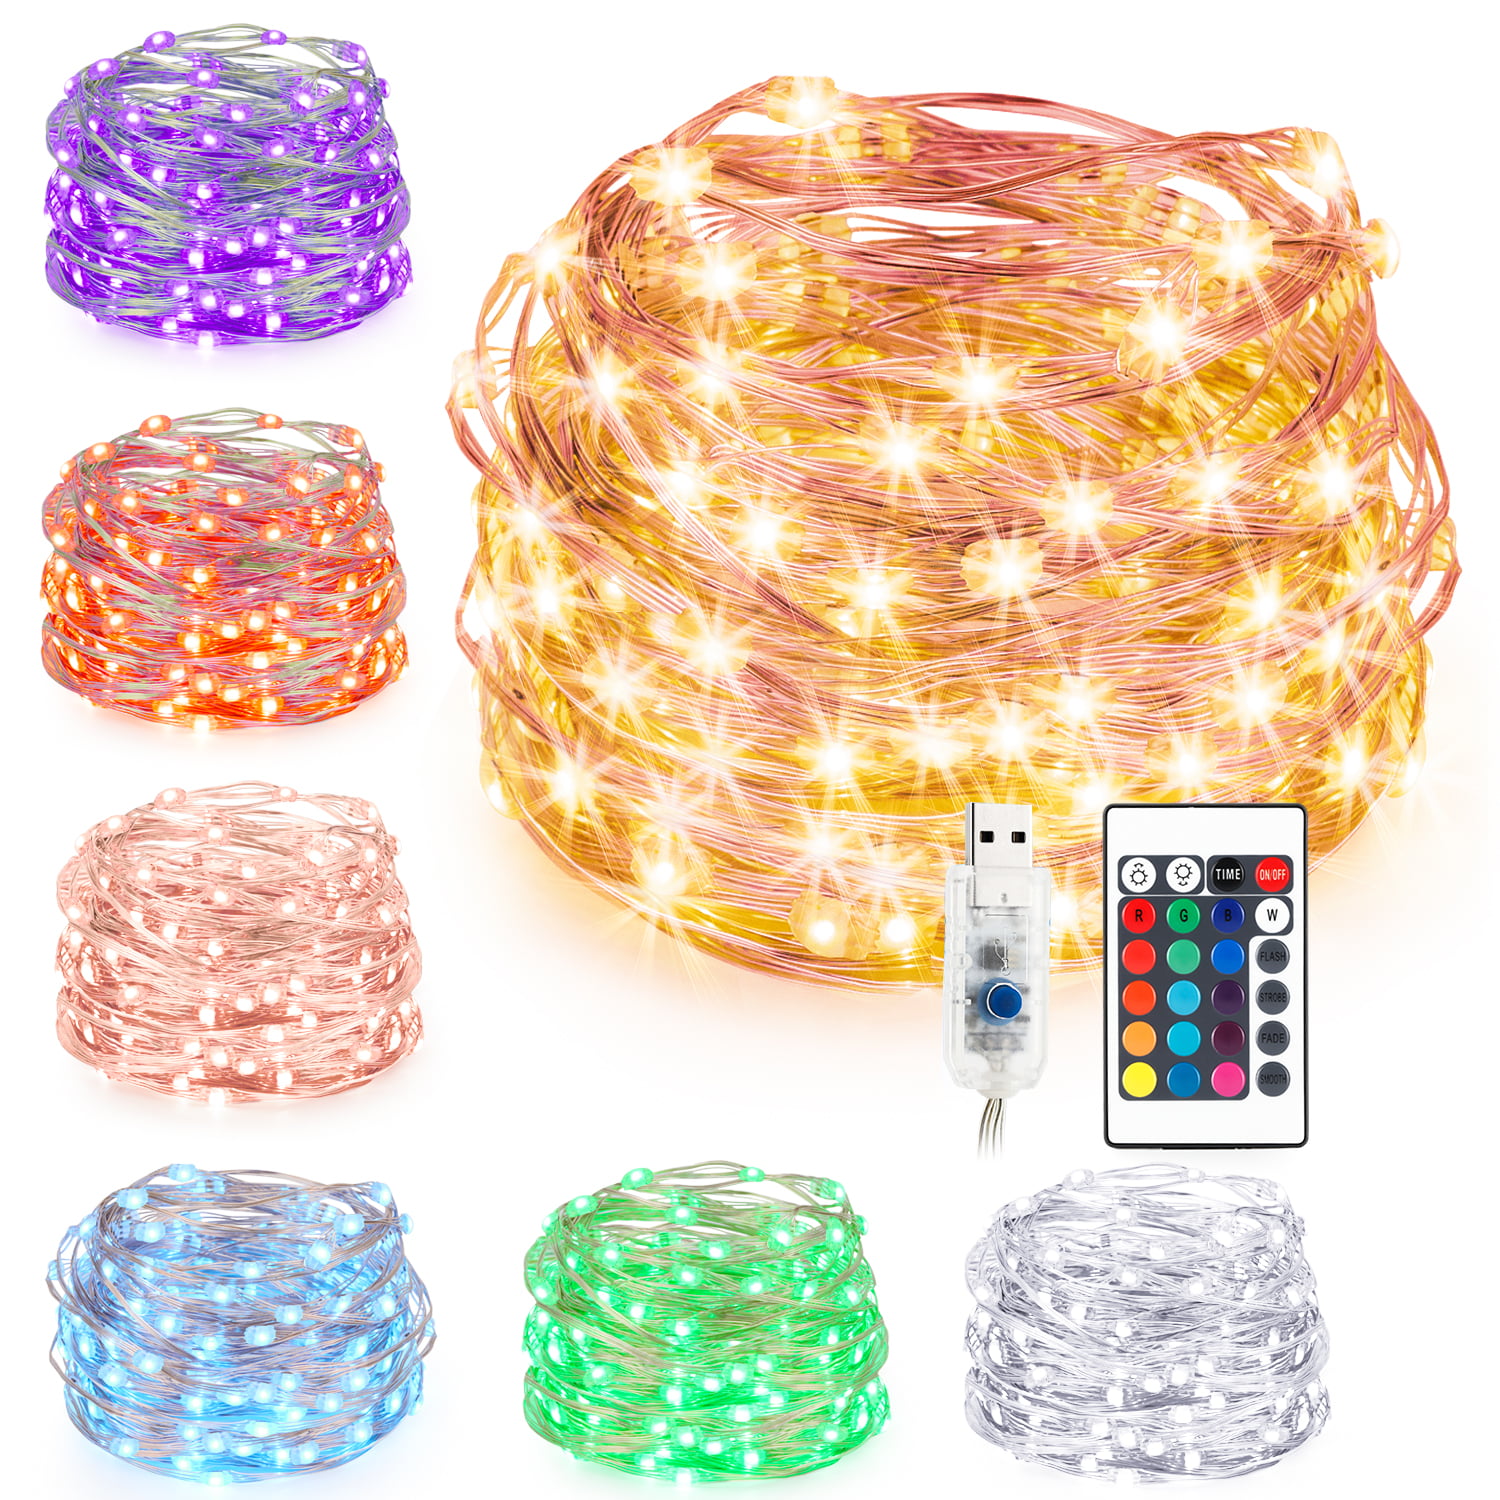 Kohree LED String Lights,USB Powered Multi Color Changing String Lights